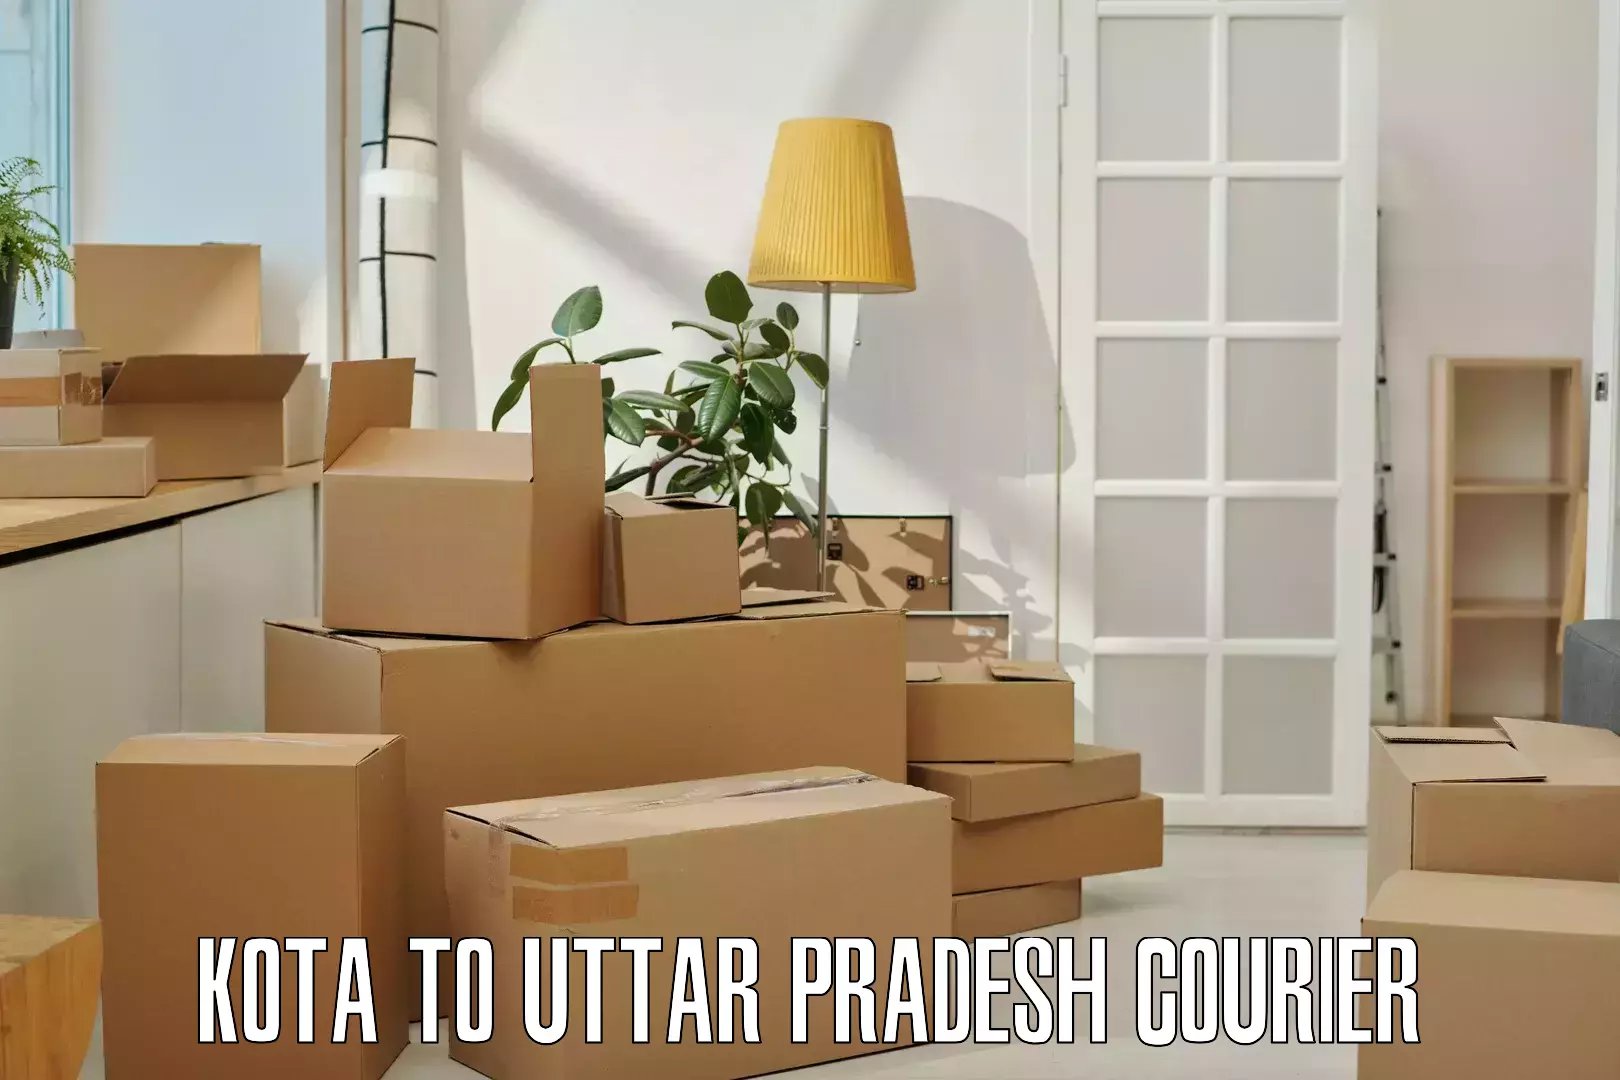 24-hour courier services Kota to Noida